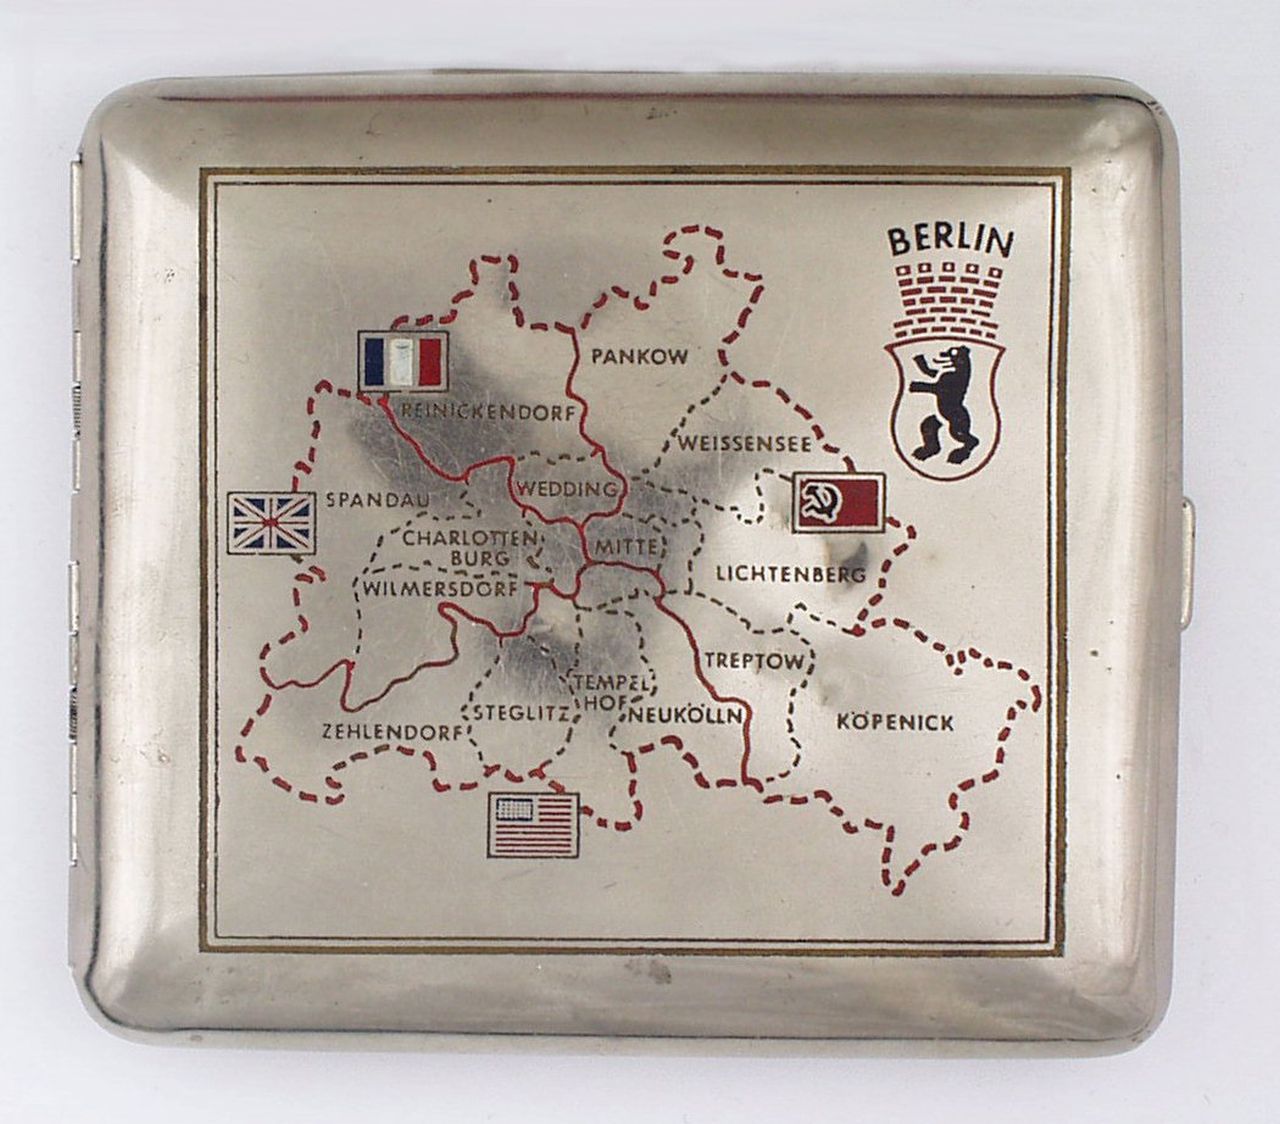 Silbernes Zigarettenetui eines Angehörigen der in Berlin stationierten alliierten Truppen mit der Gravierung Berlins als Vier-Sektoren-Stadt.